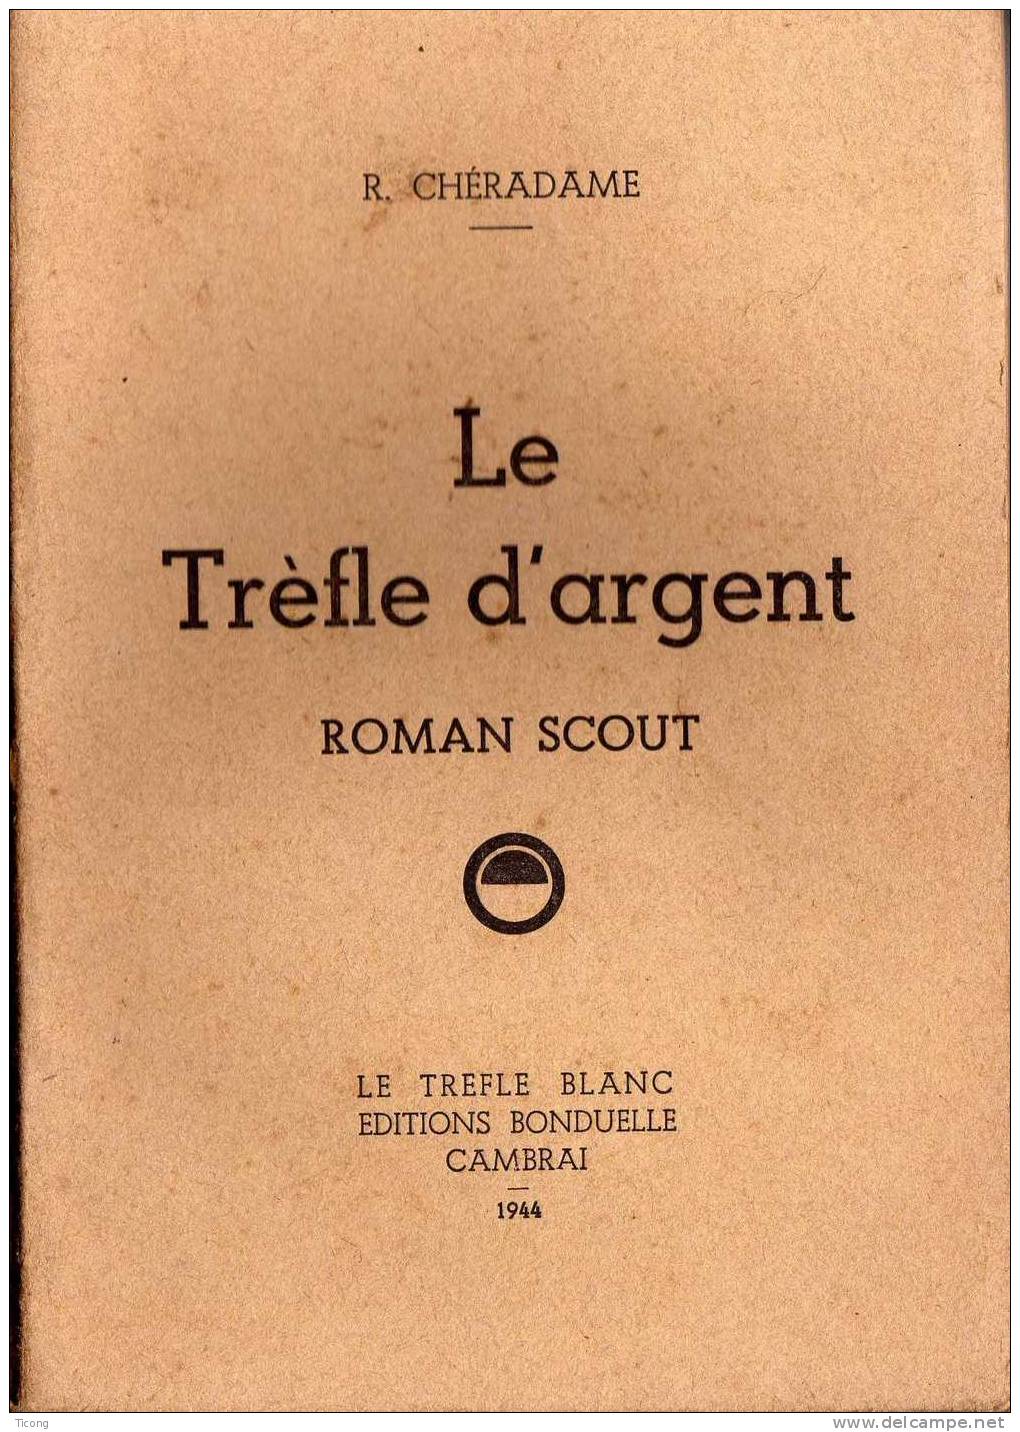 SCOUTISME- TREFLE D ARGENT ROMAN SCOUT, R CHERADAME    - 1ERE EDITION 1944  - LE TREFLE BLANC EDITIONS BONDUELLE CAMBRAI - Padvinderij